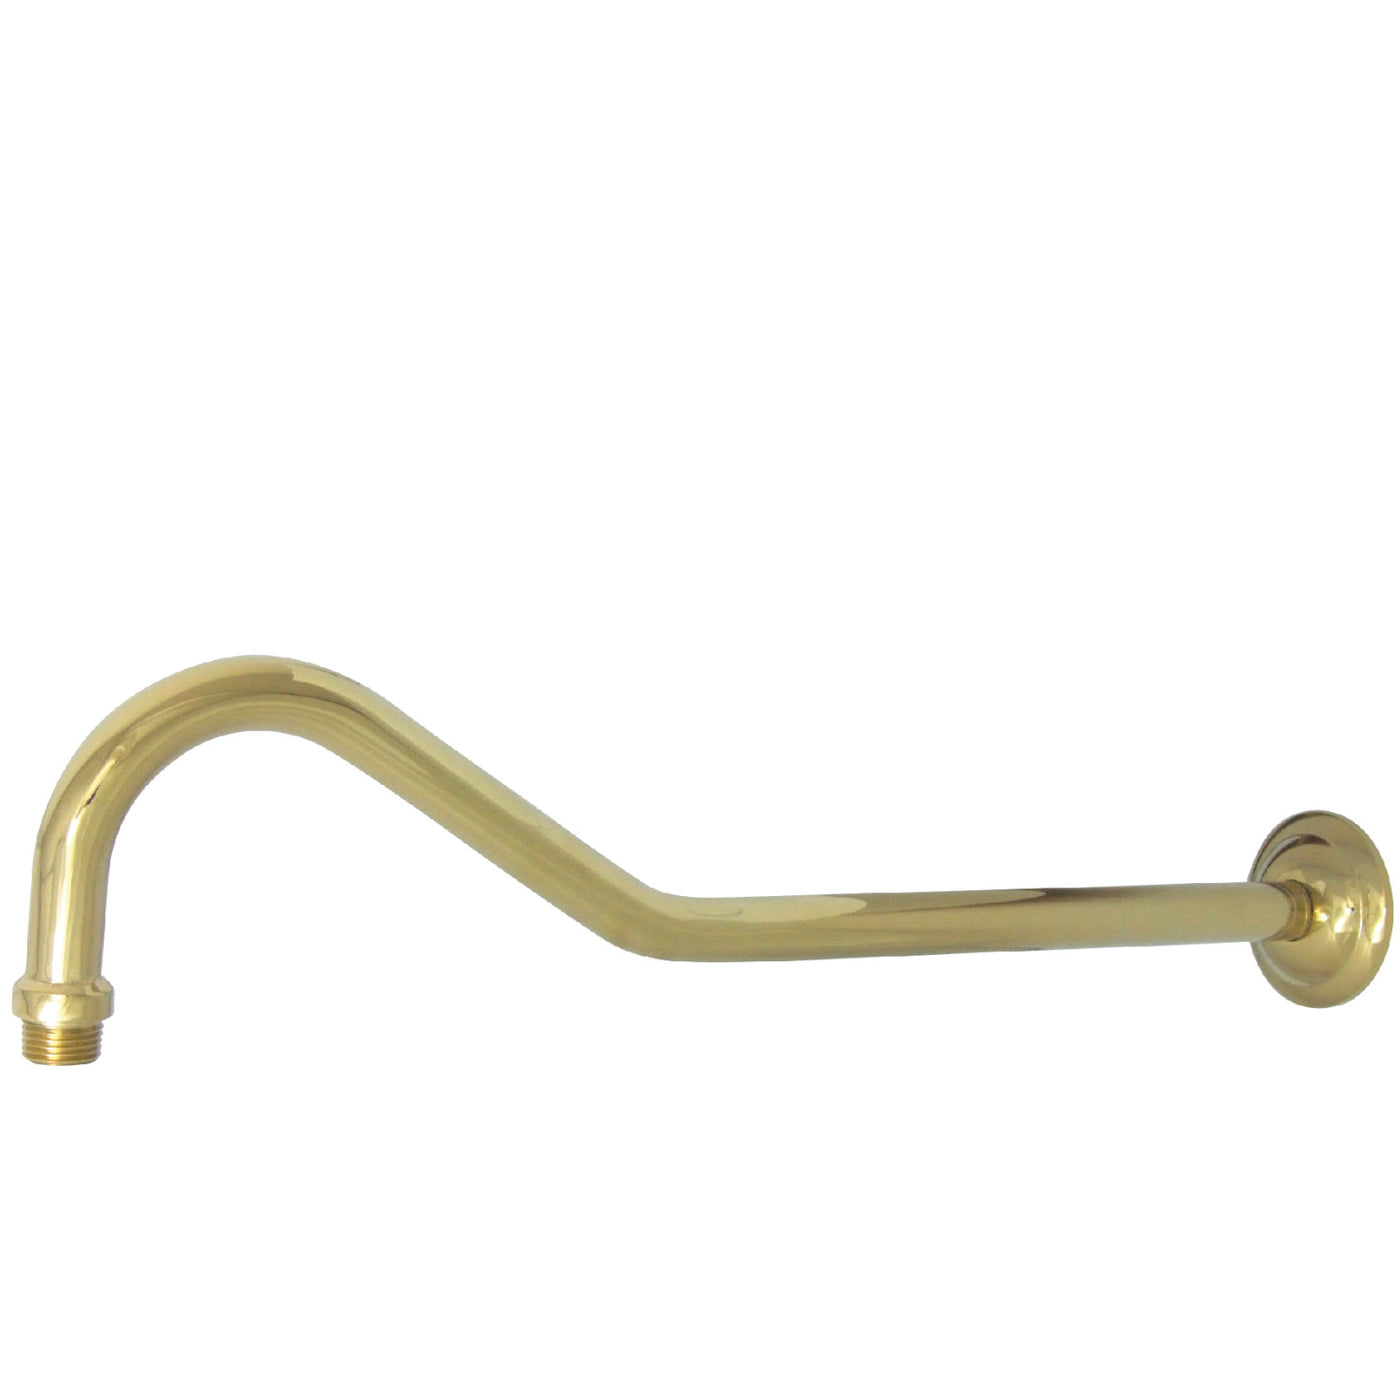 Elements of Design DK117C2 17-Inch Shower Arm, Polished Brass